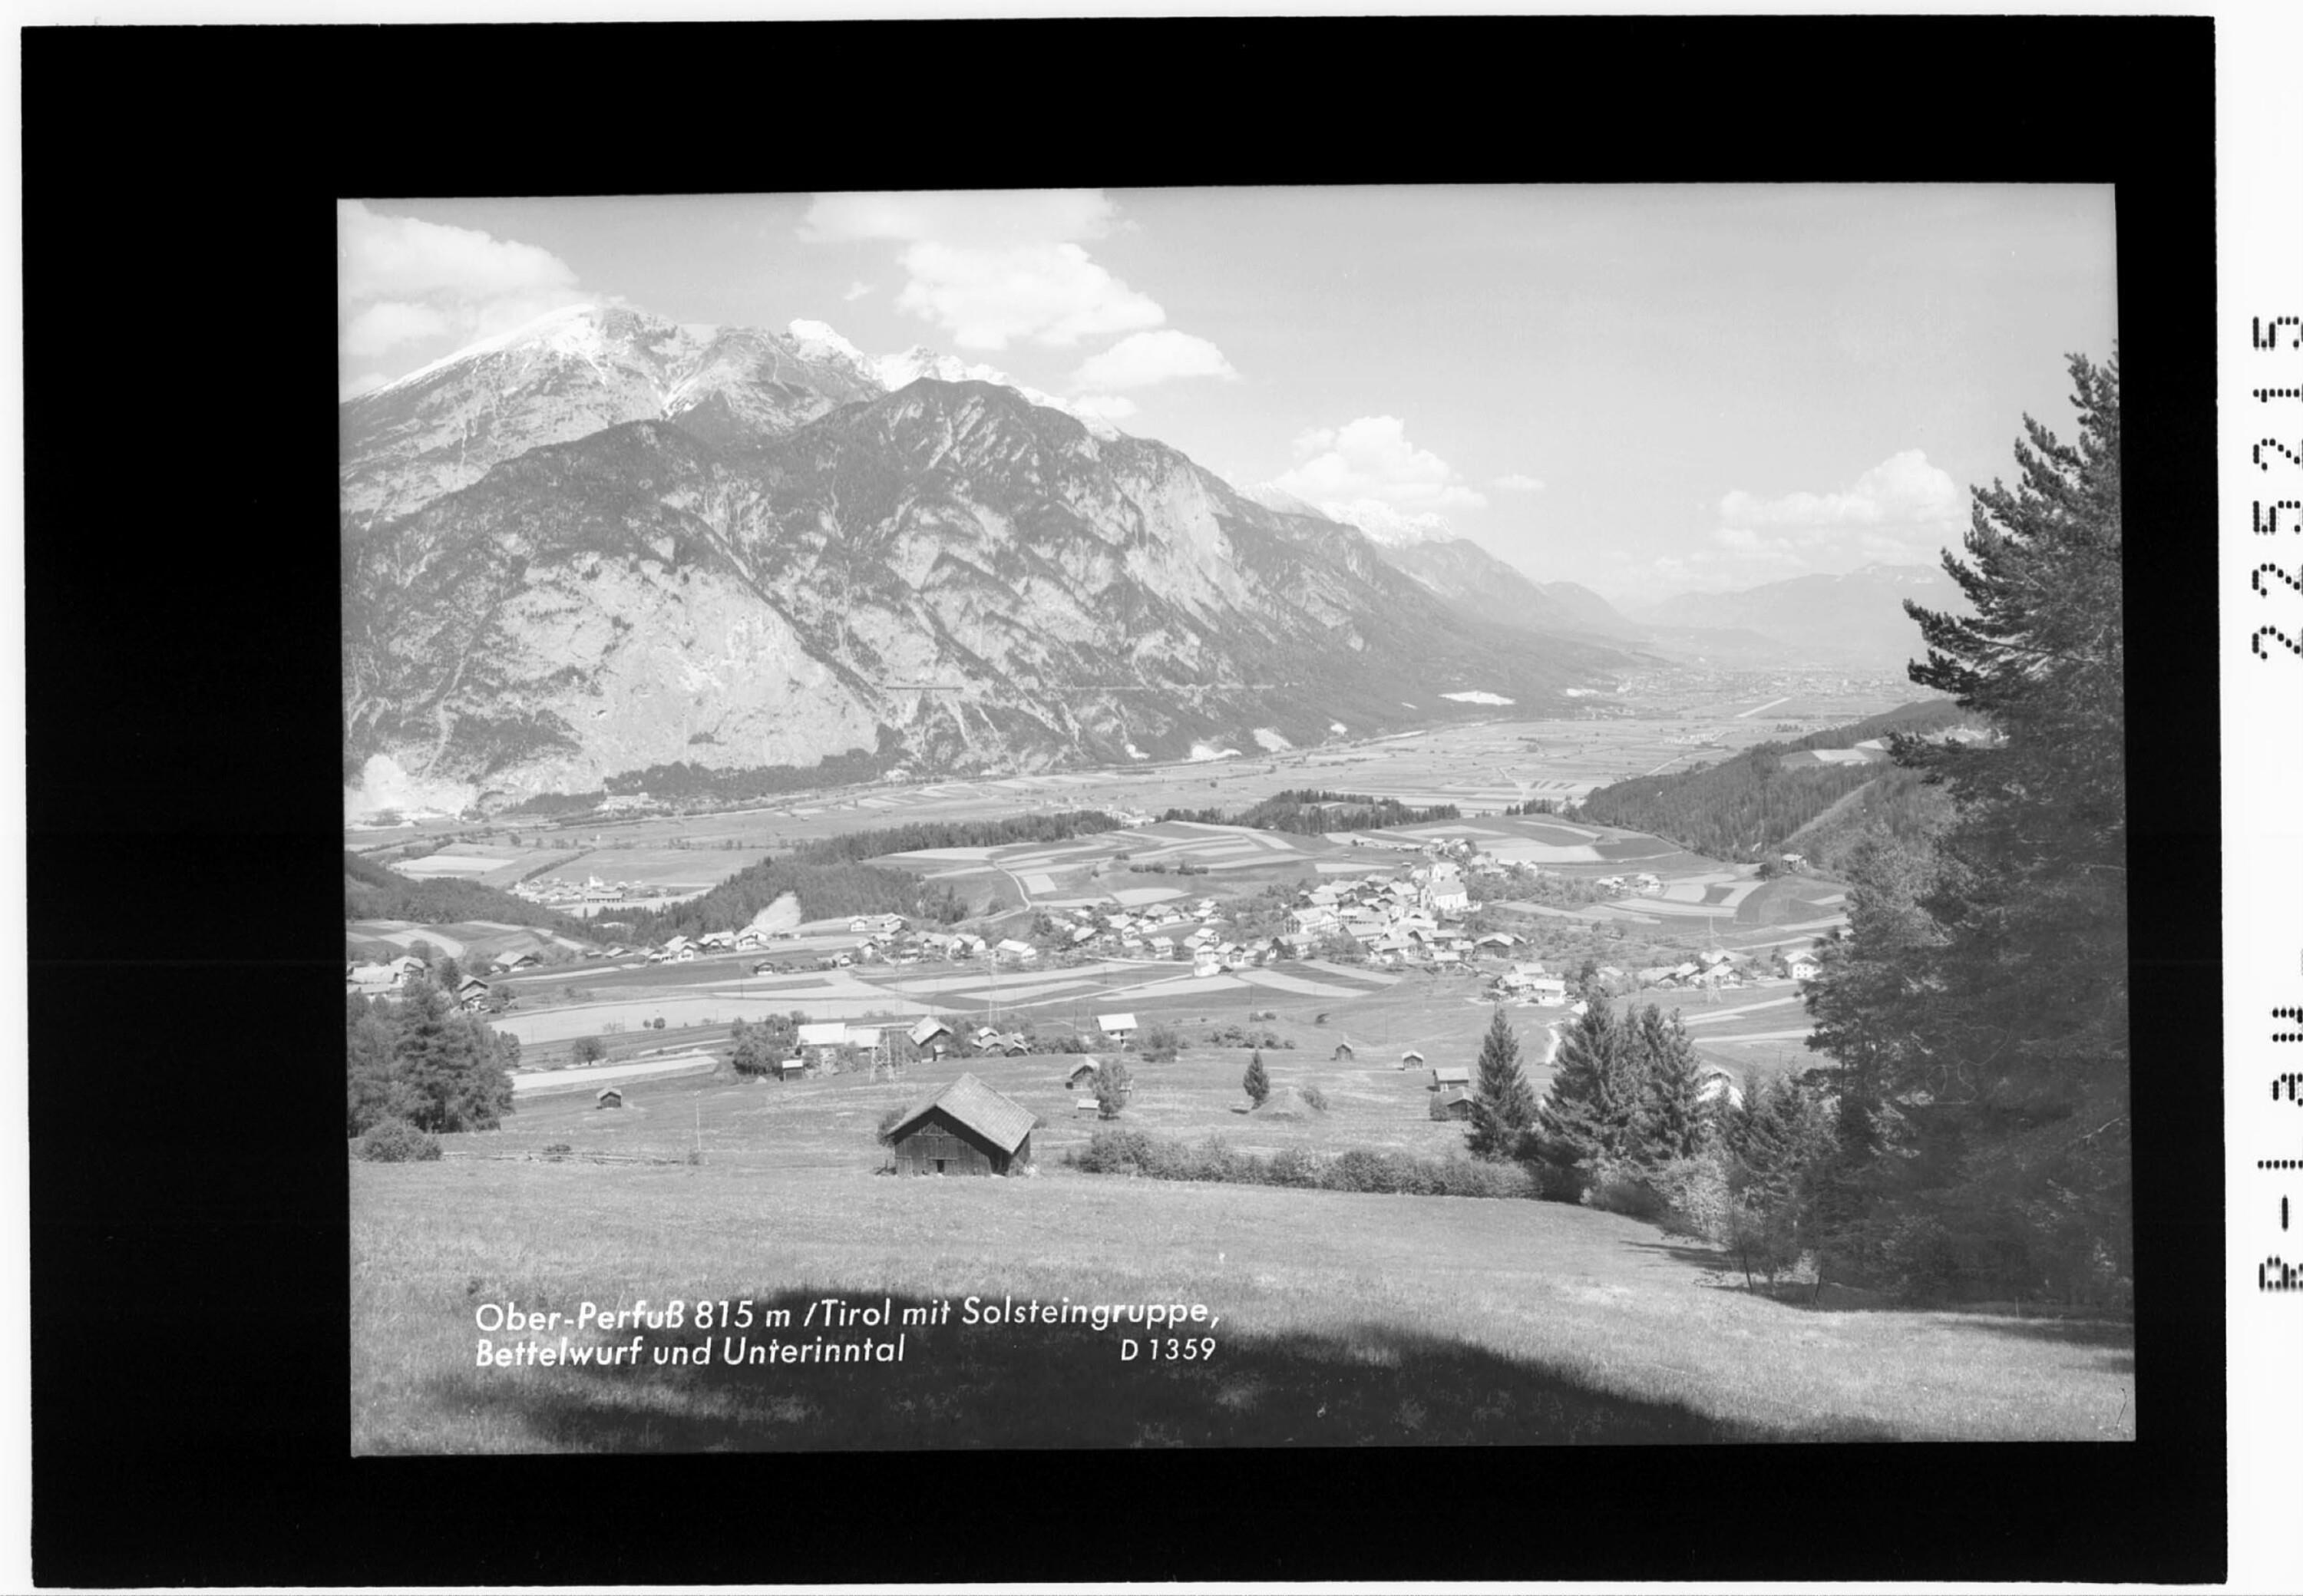 Oberperfuß 815 m / Tirol mit Solsteingruppe - Bettelwurf und Unterinntal></div>


    <hr>
    <div class=